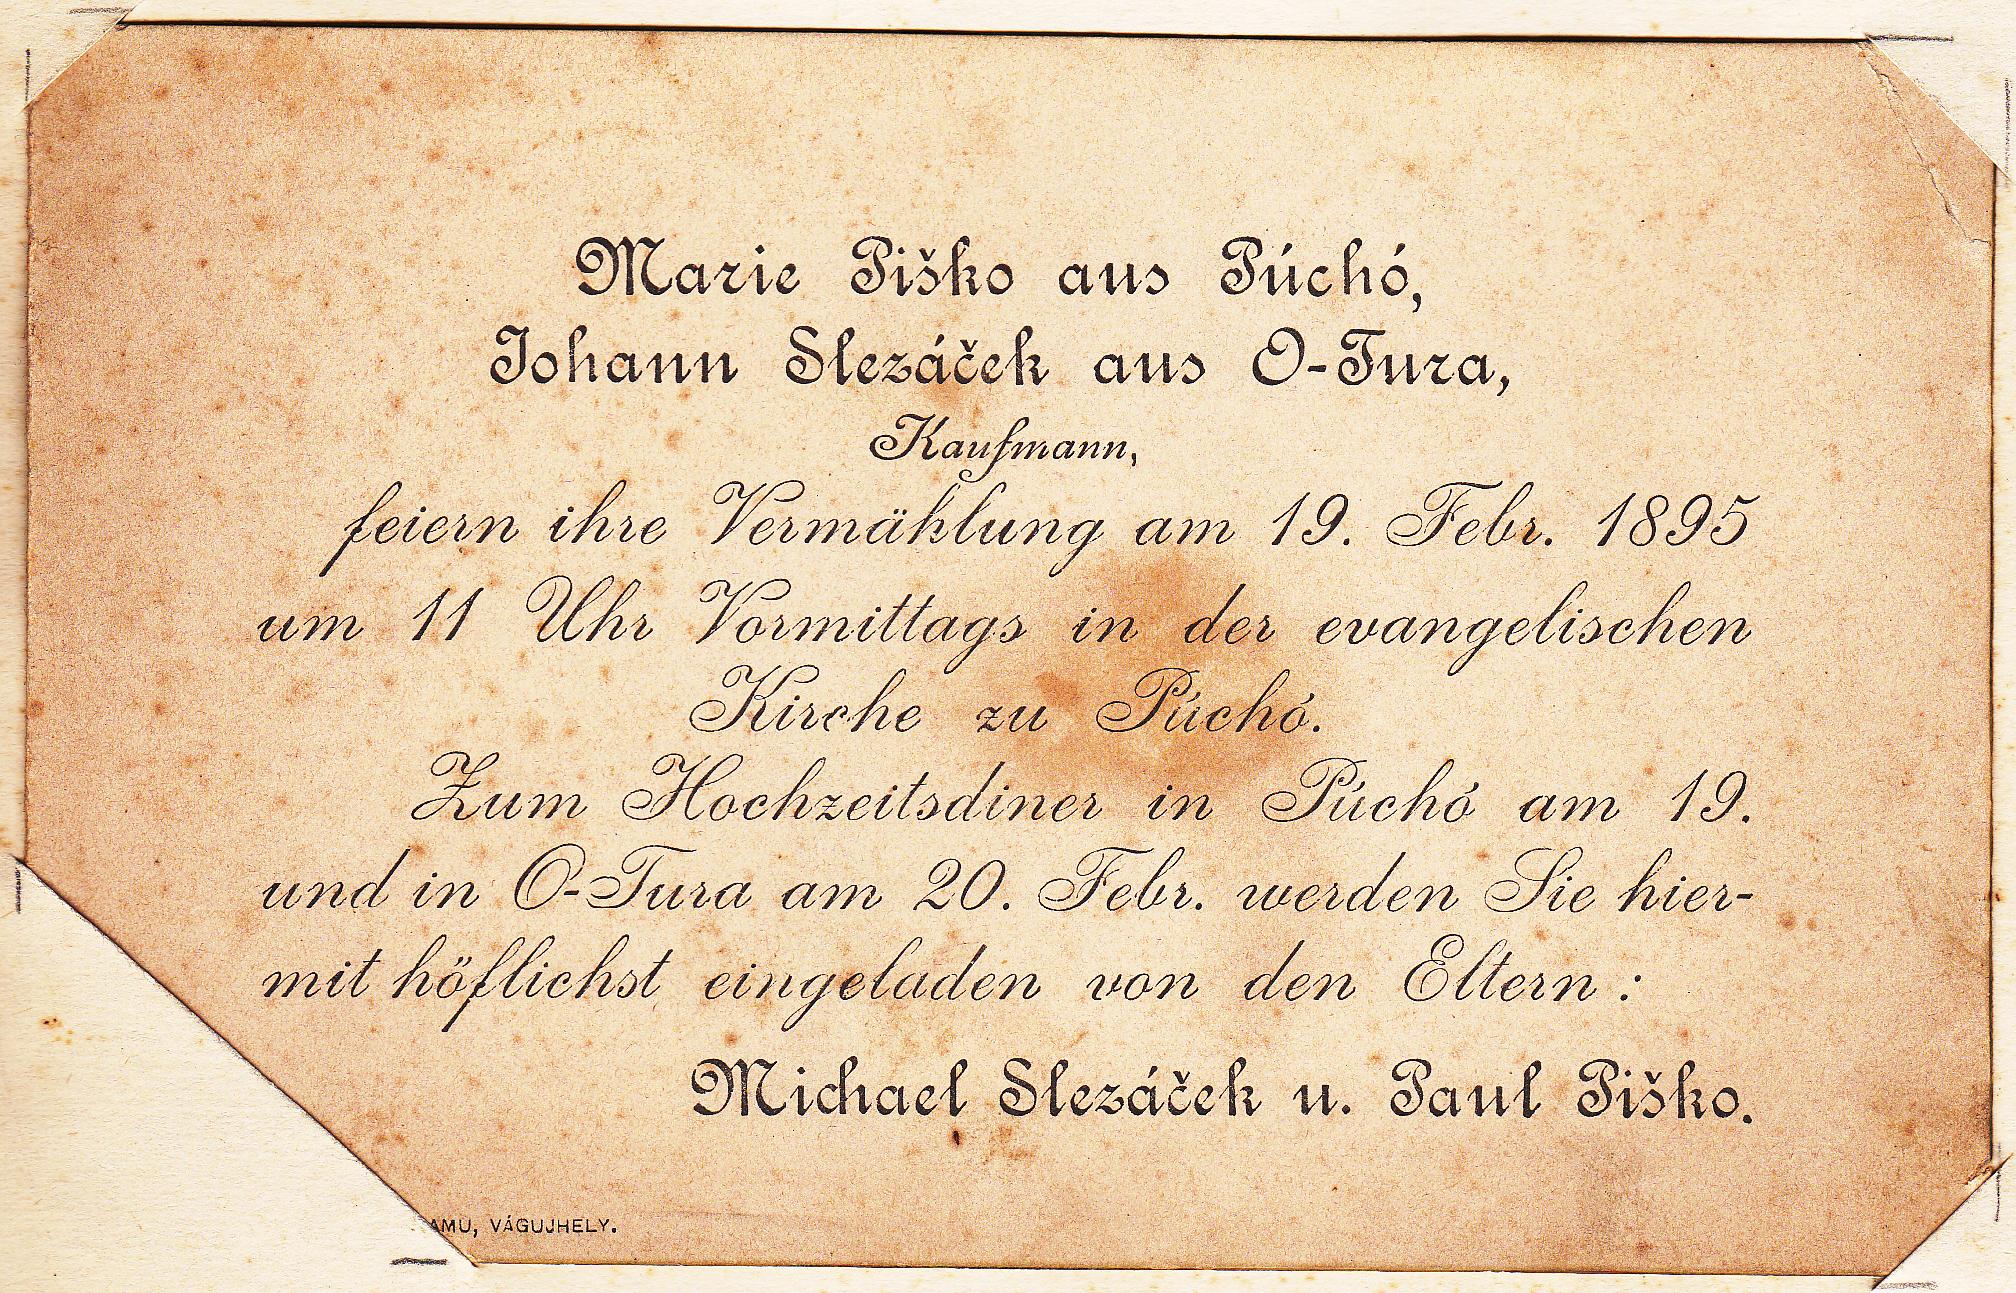 Svadobné oznámenie Márie Piškovej z Púchova a Janka Slezáčka zo Starej Turej z r. 1895 v nemčine